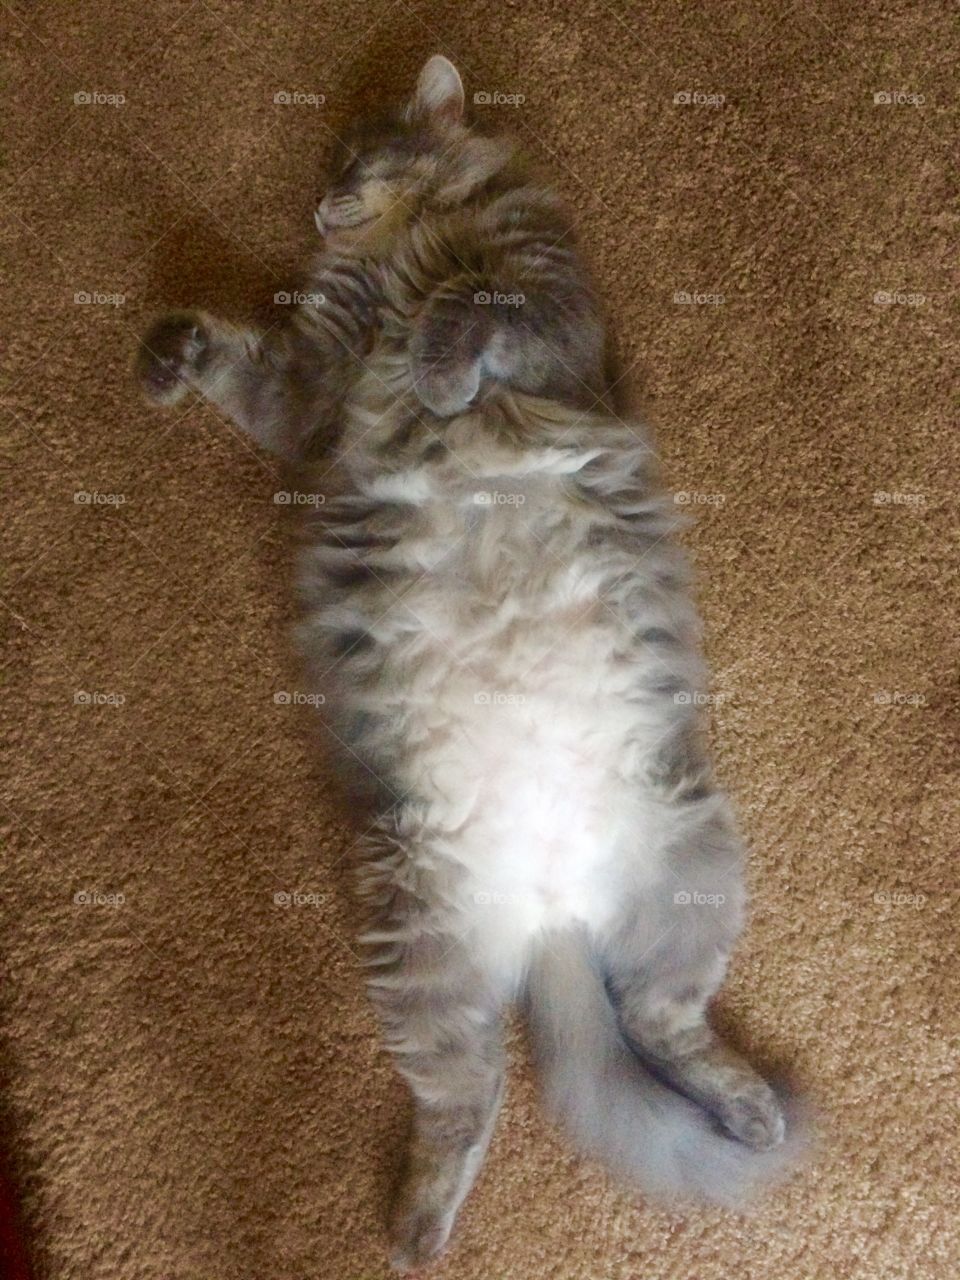 Big fat lazy cat. 